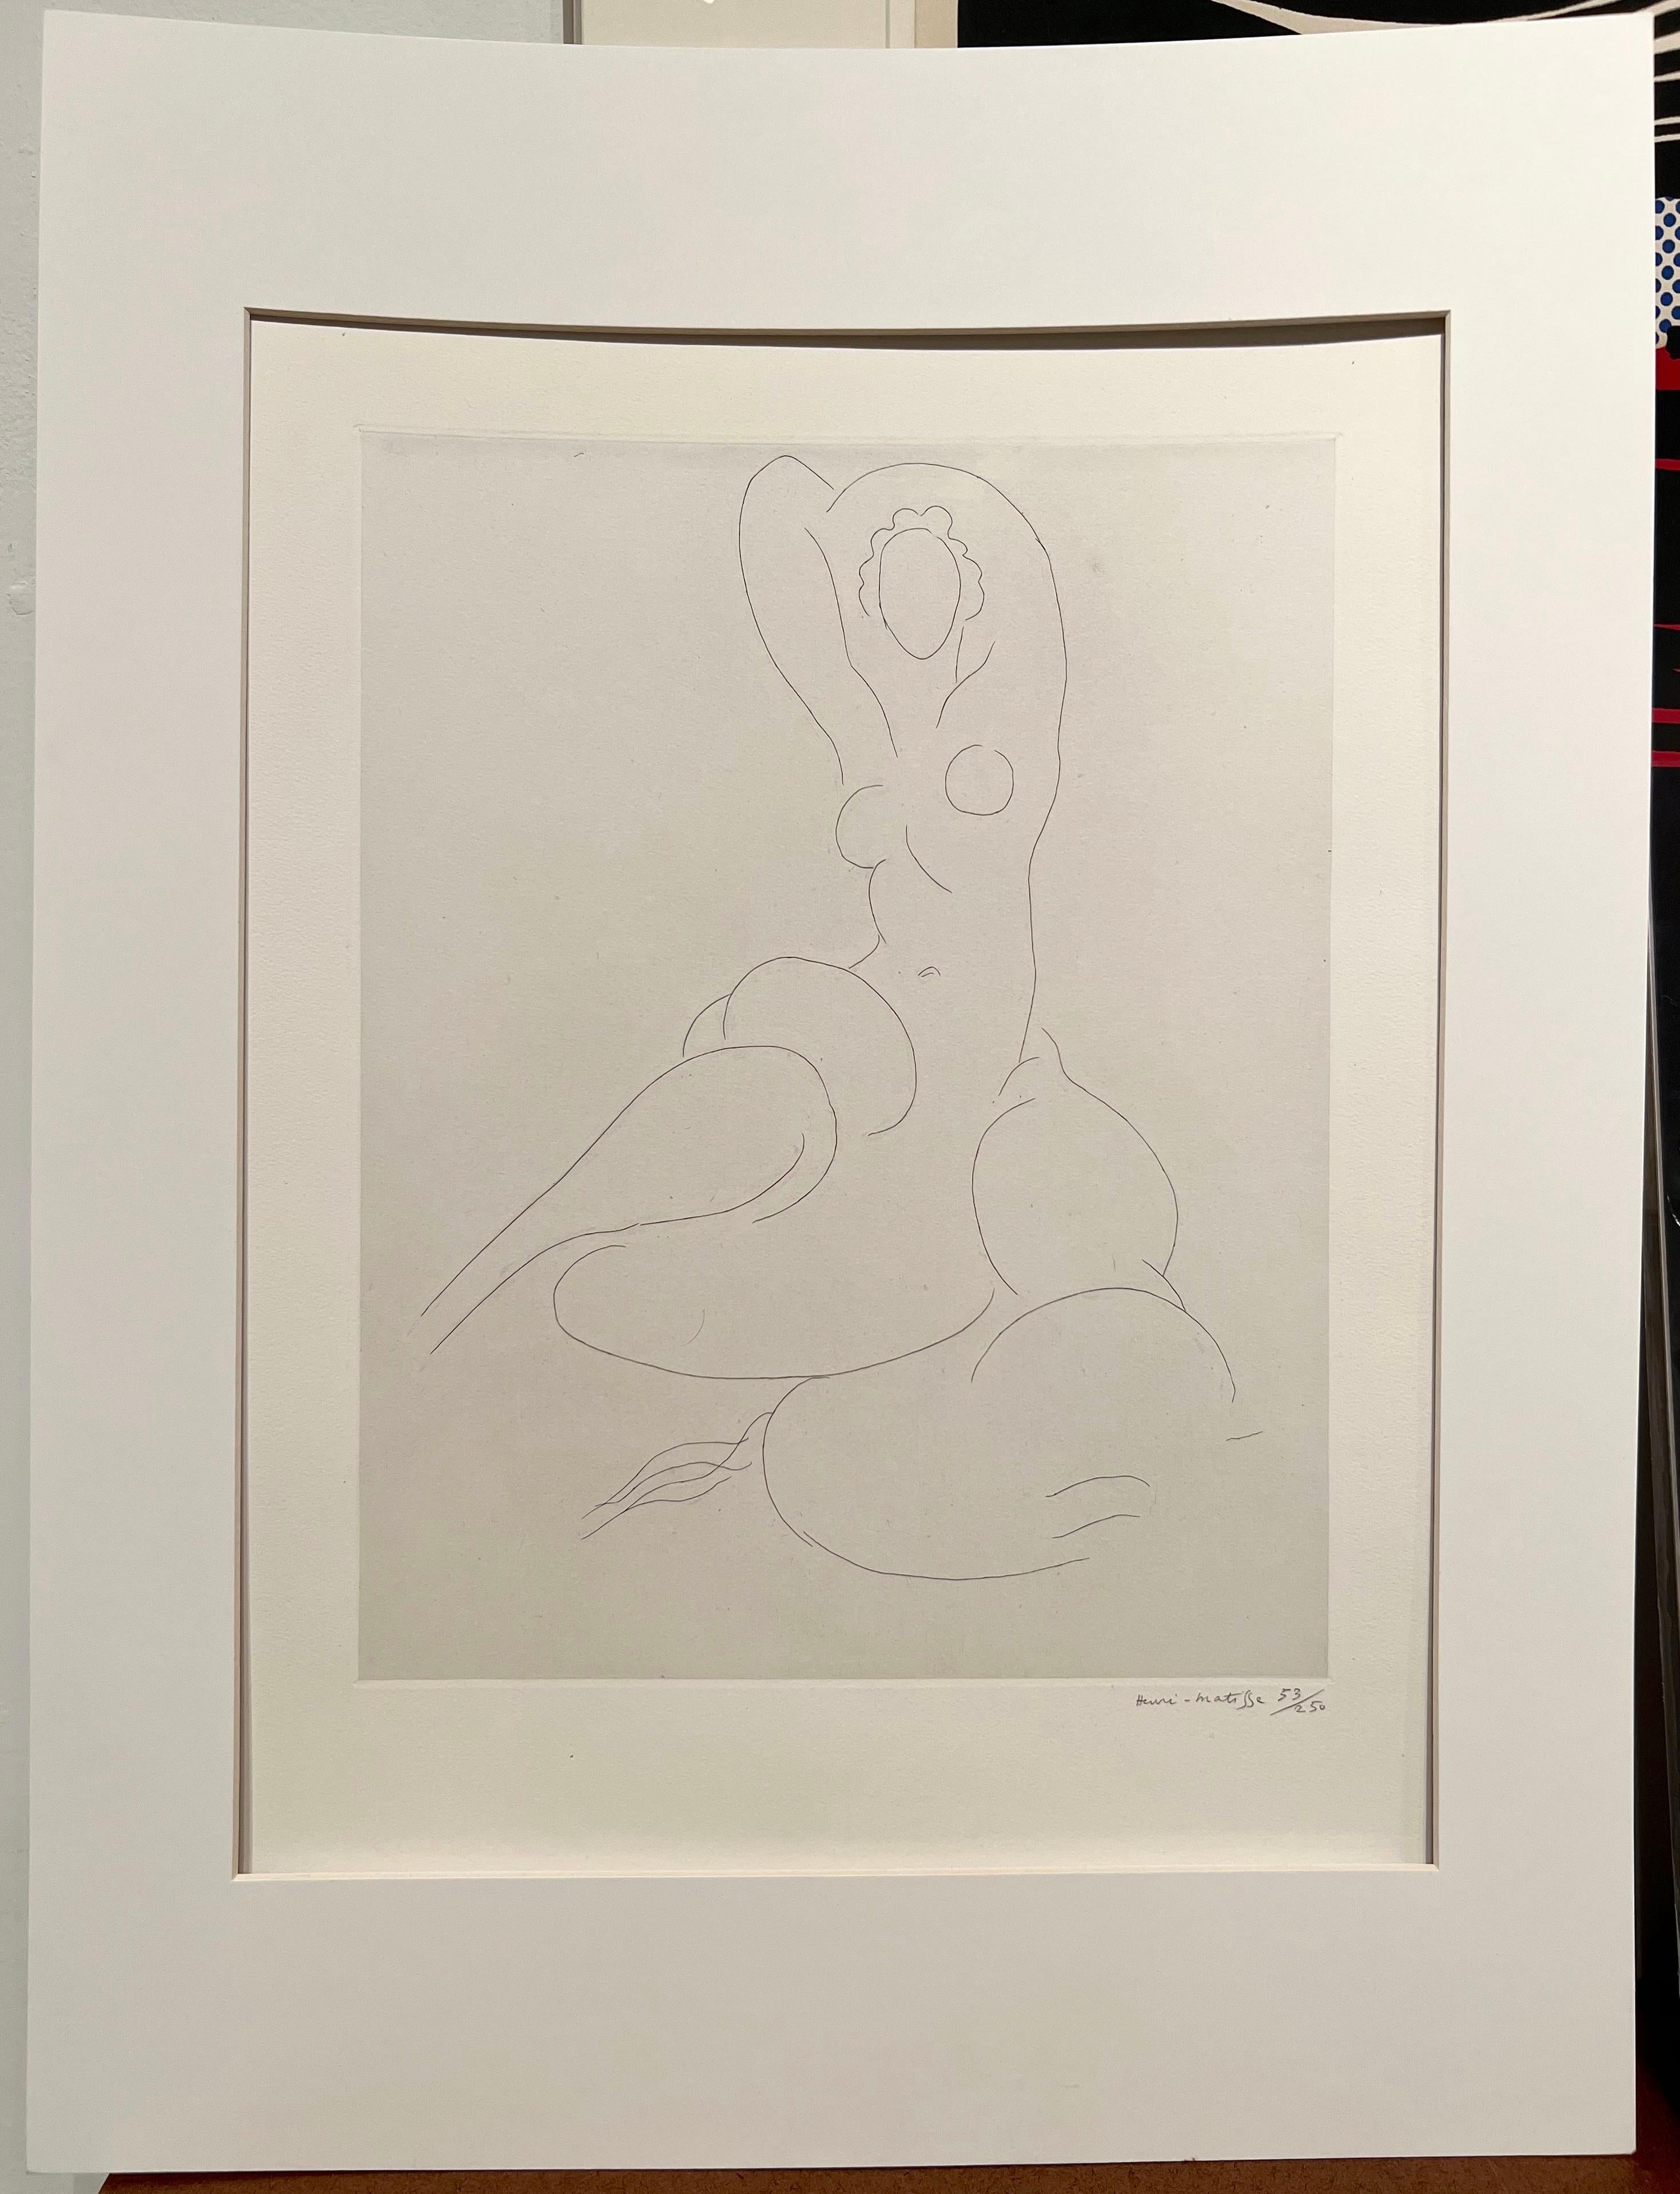 Cleveland gegossen (Zeitgenössisch), Print, von Henri Matisse